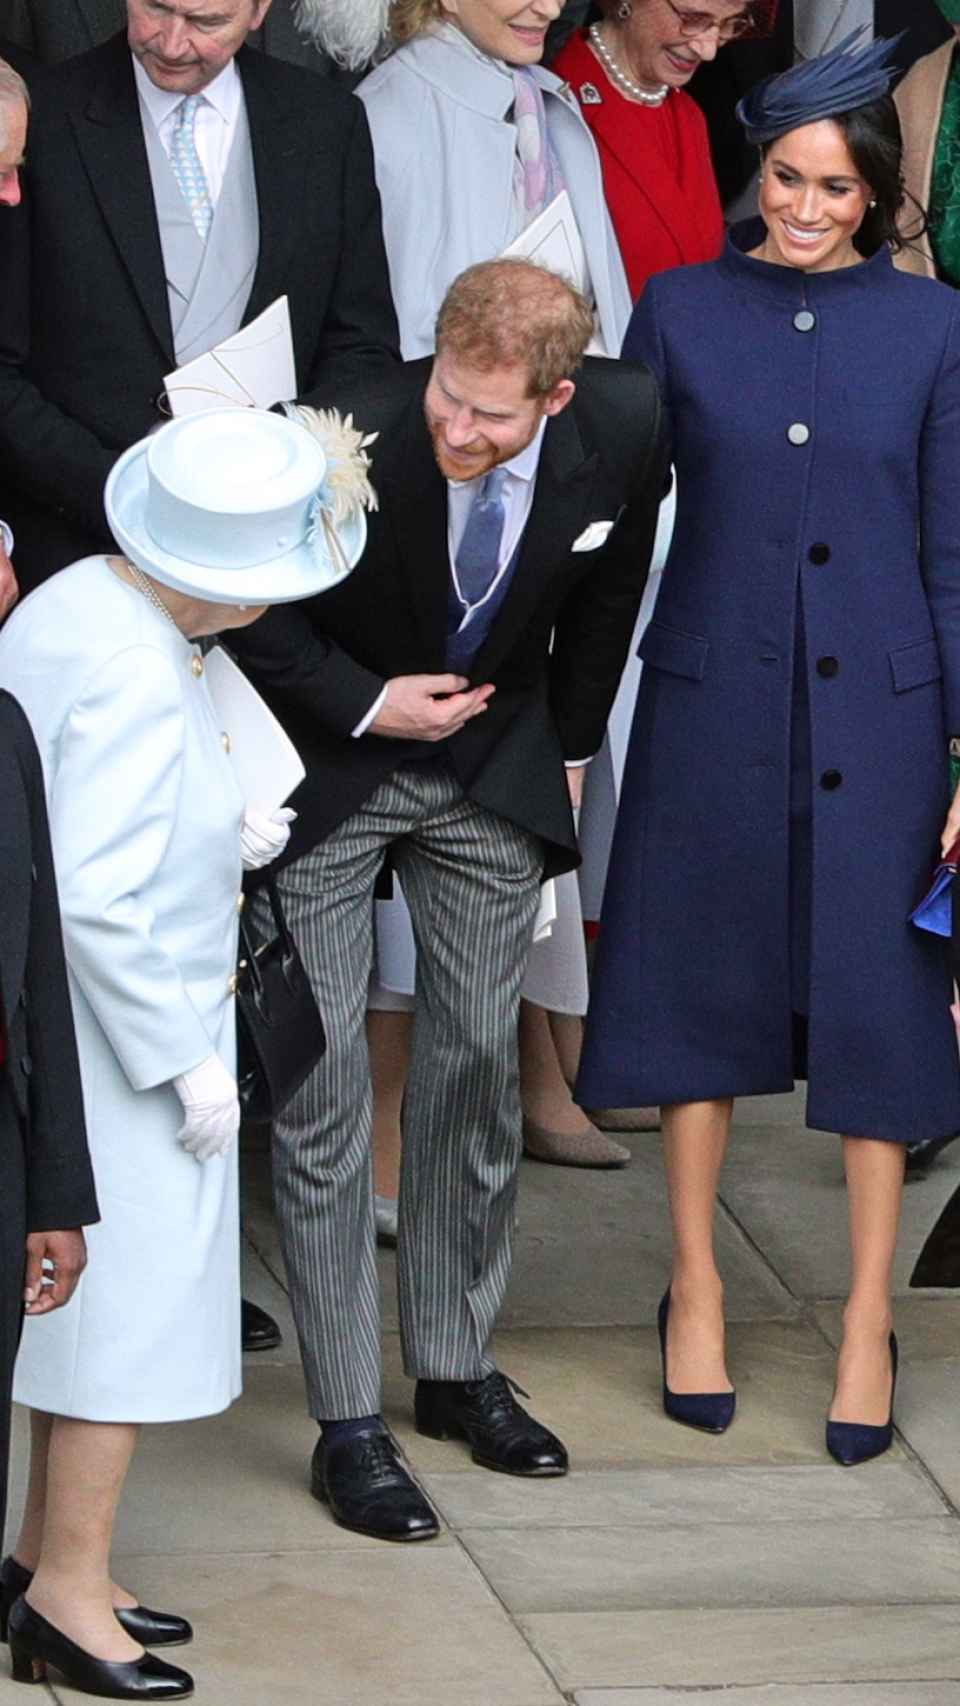 La reina conversa con lo duques de Sussex, en una imagen de archivo.